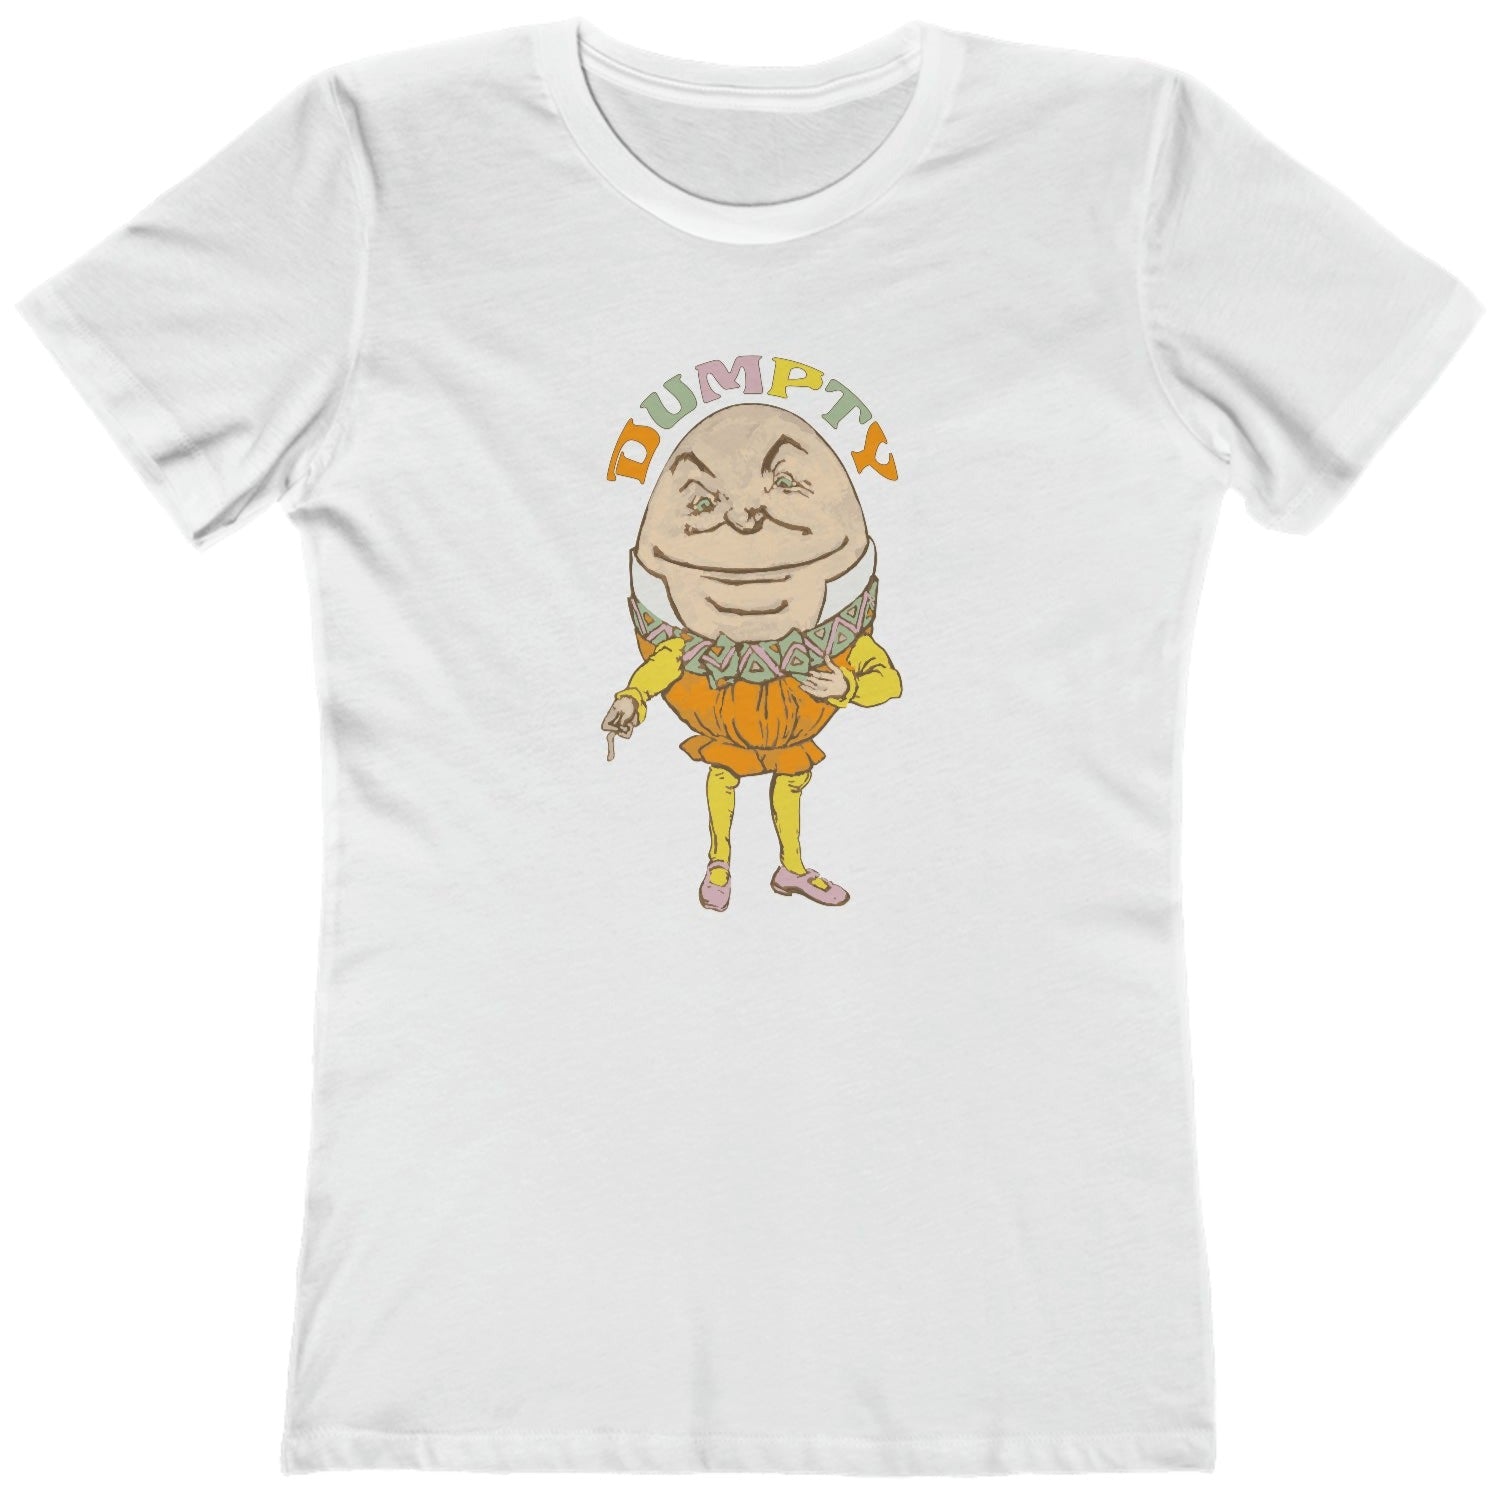 Humpty Dumpty t shirt